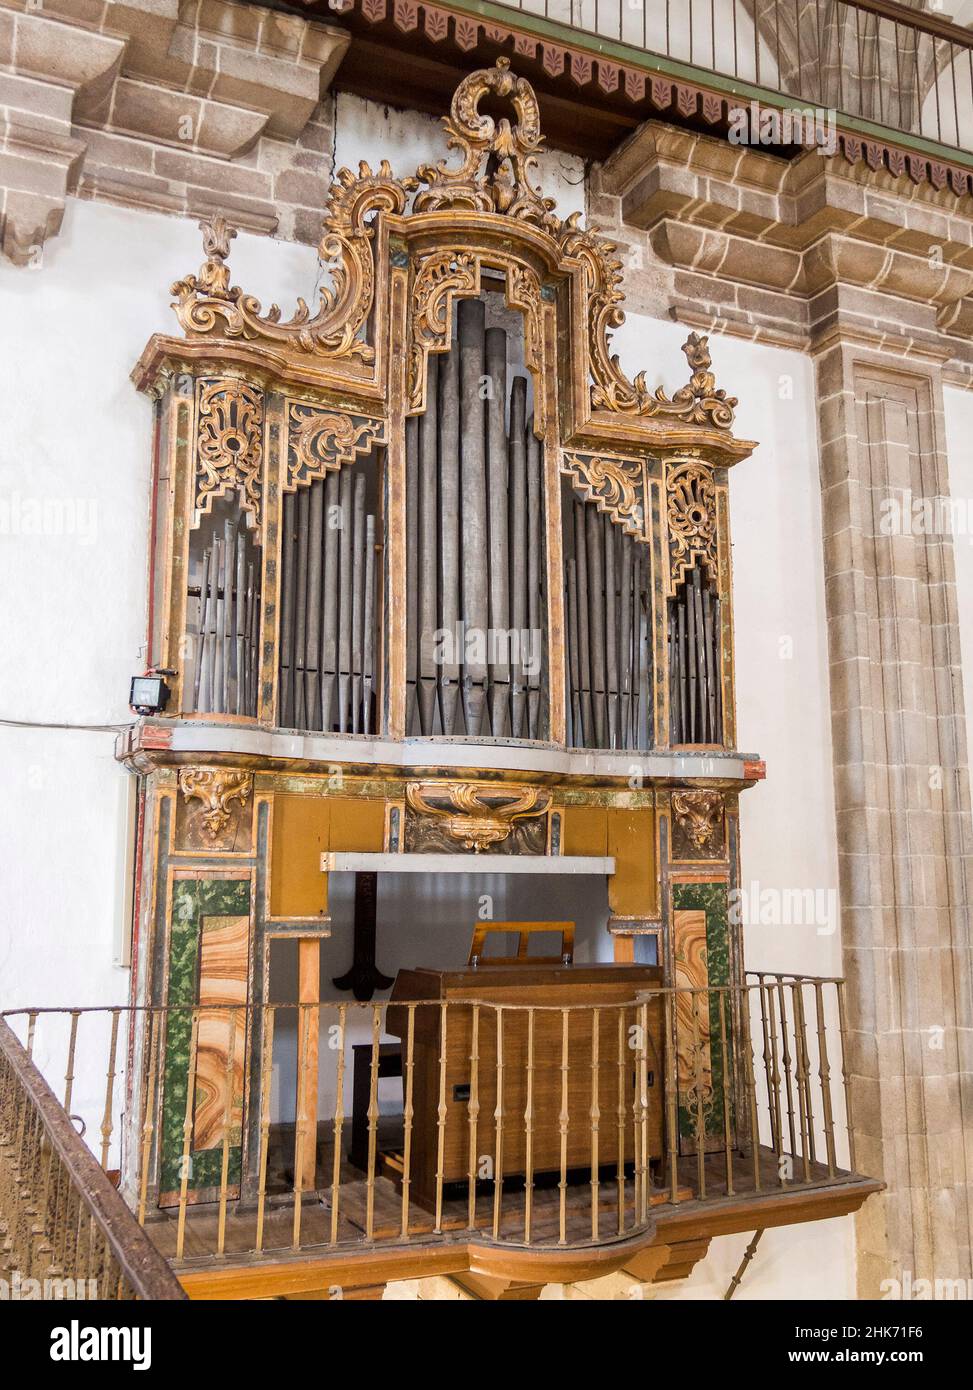 Órgano de la Iglesia parroquial de Sancti Spíritus. Melide. La Coruña. Galicia. España Stock Photo